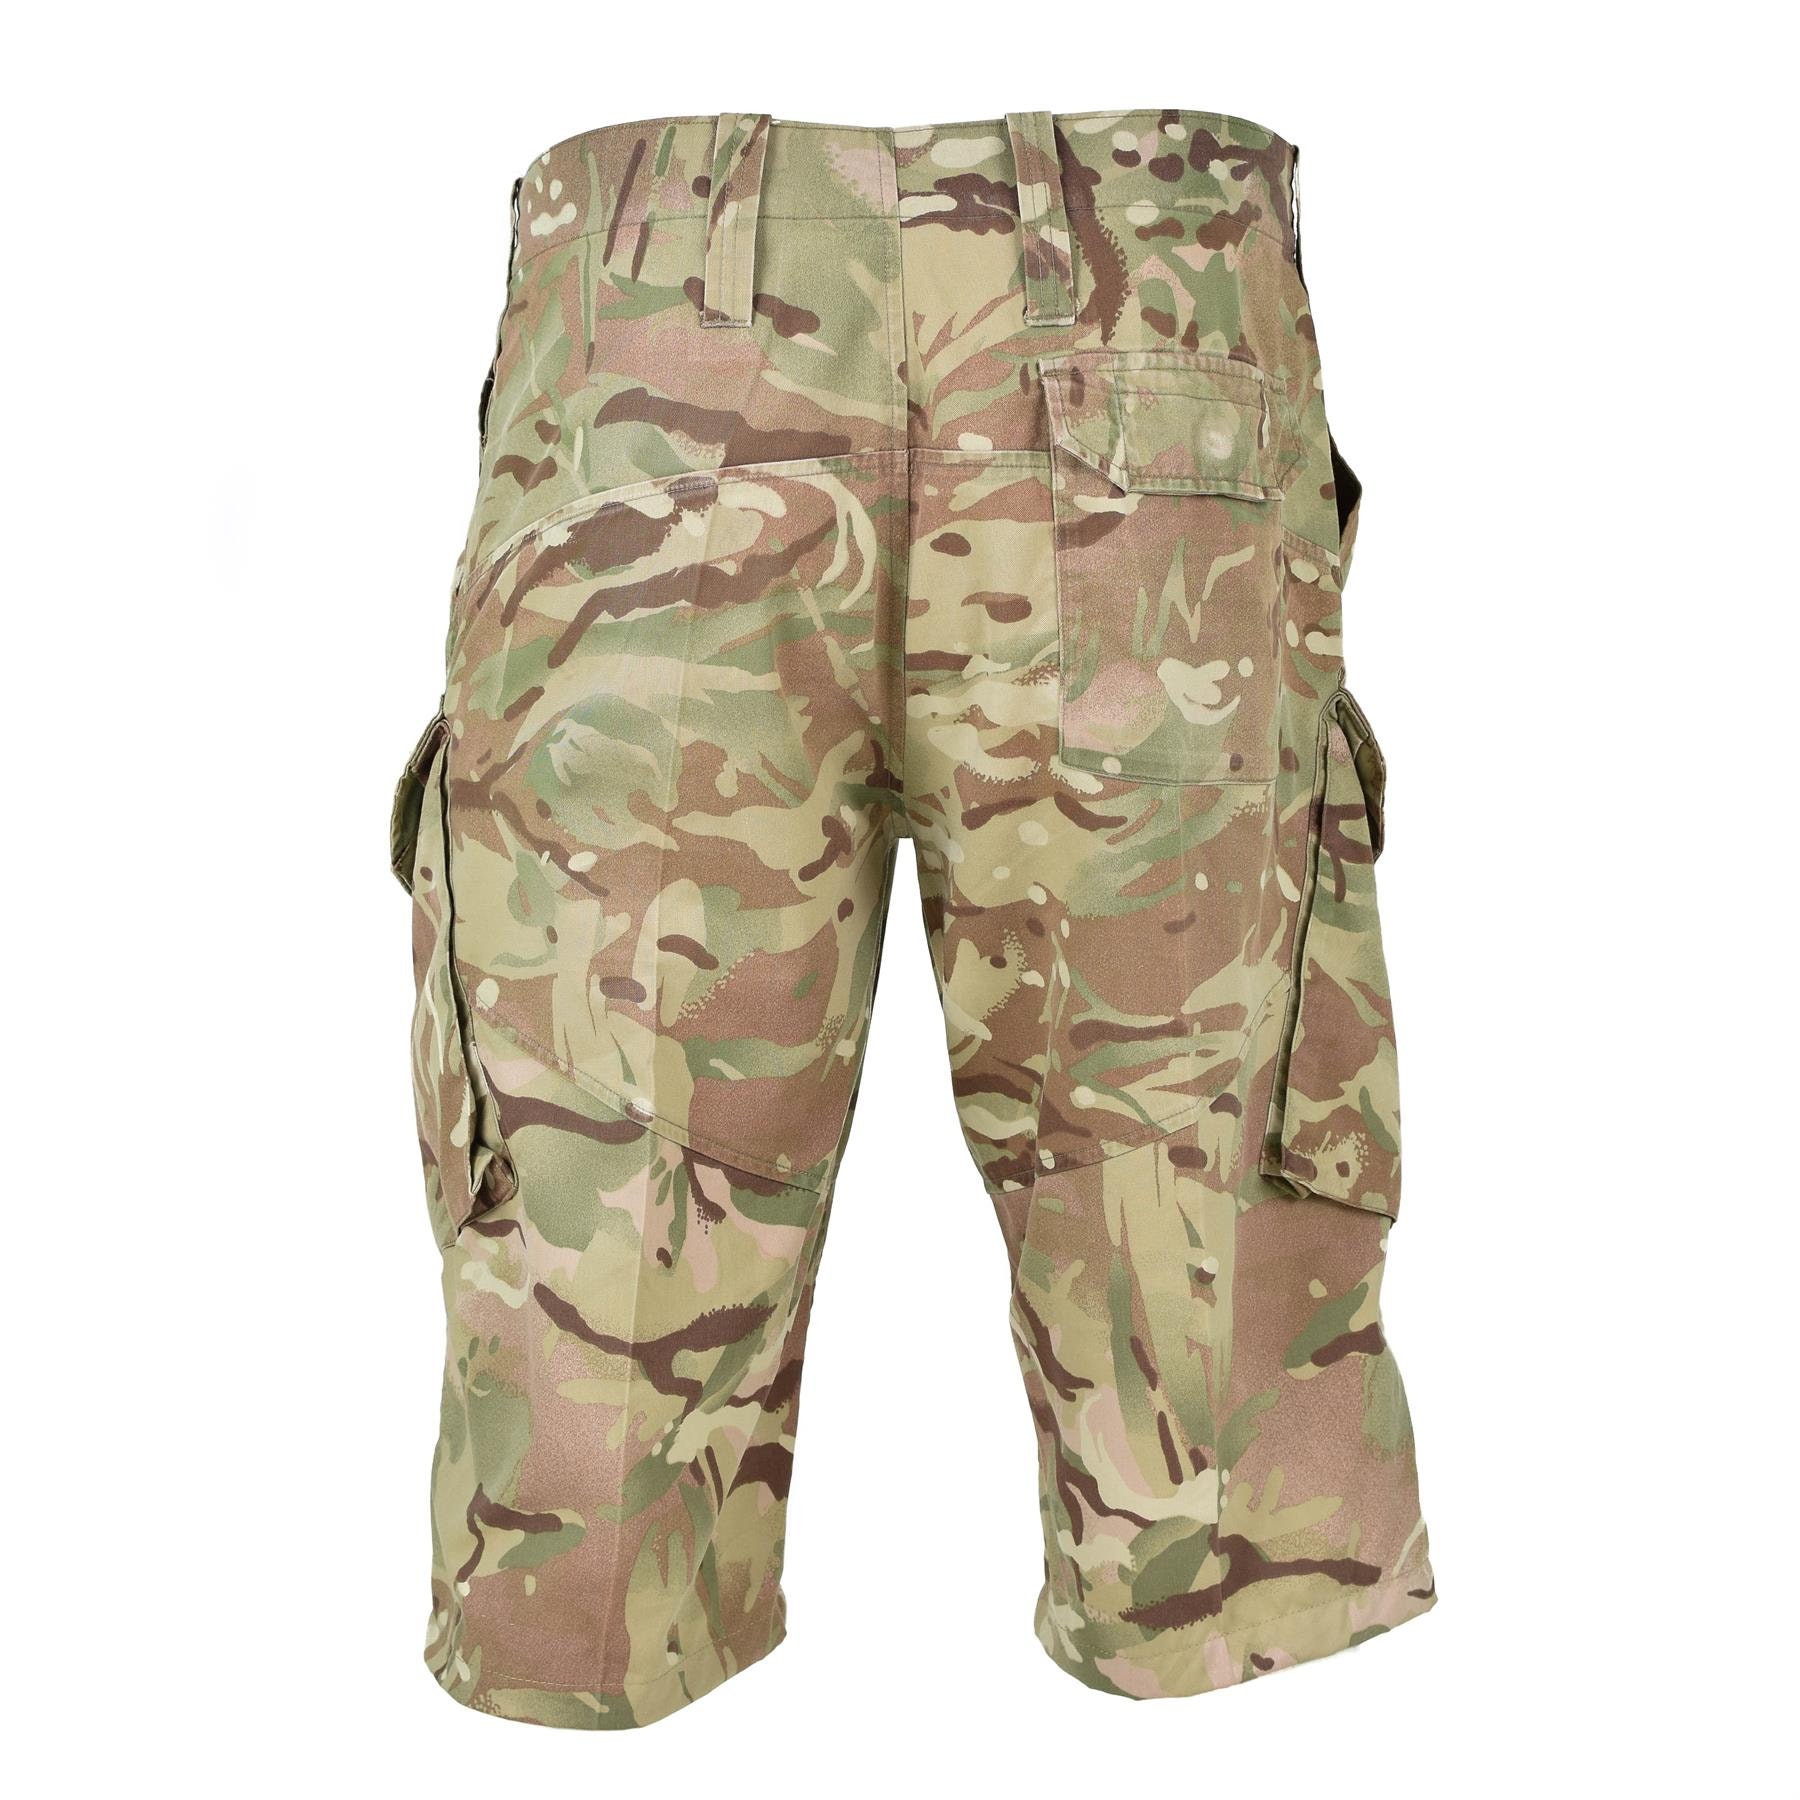 Men's Clothing Shorts Genuine British Army Issue Surplus Multicam ...